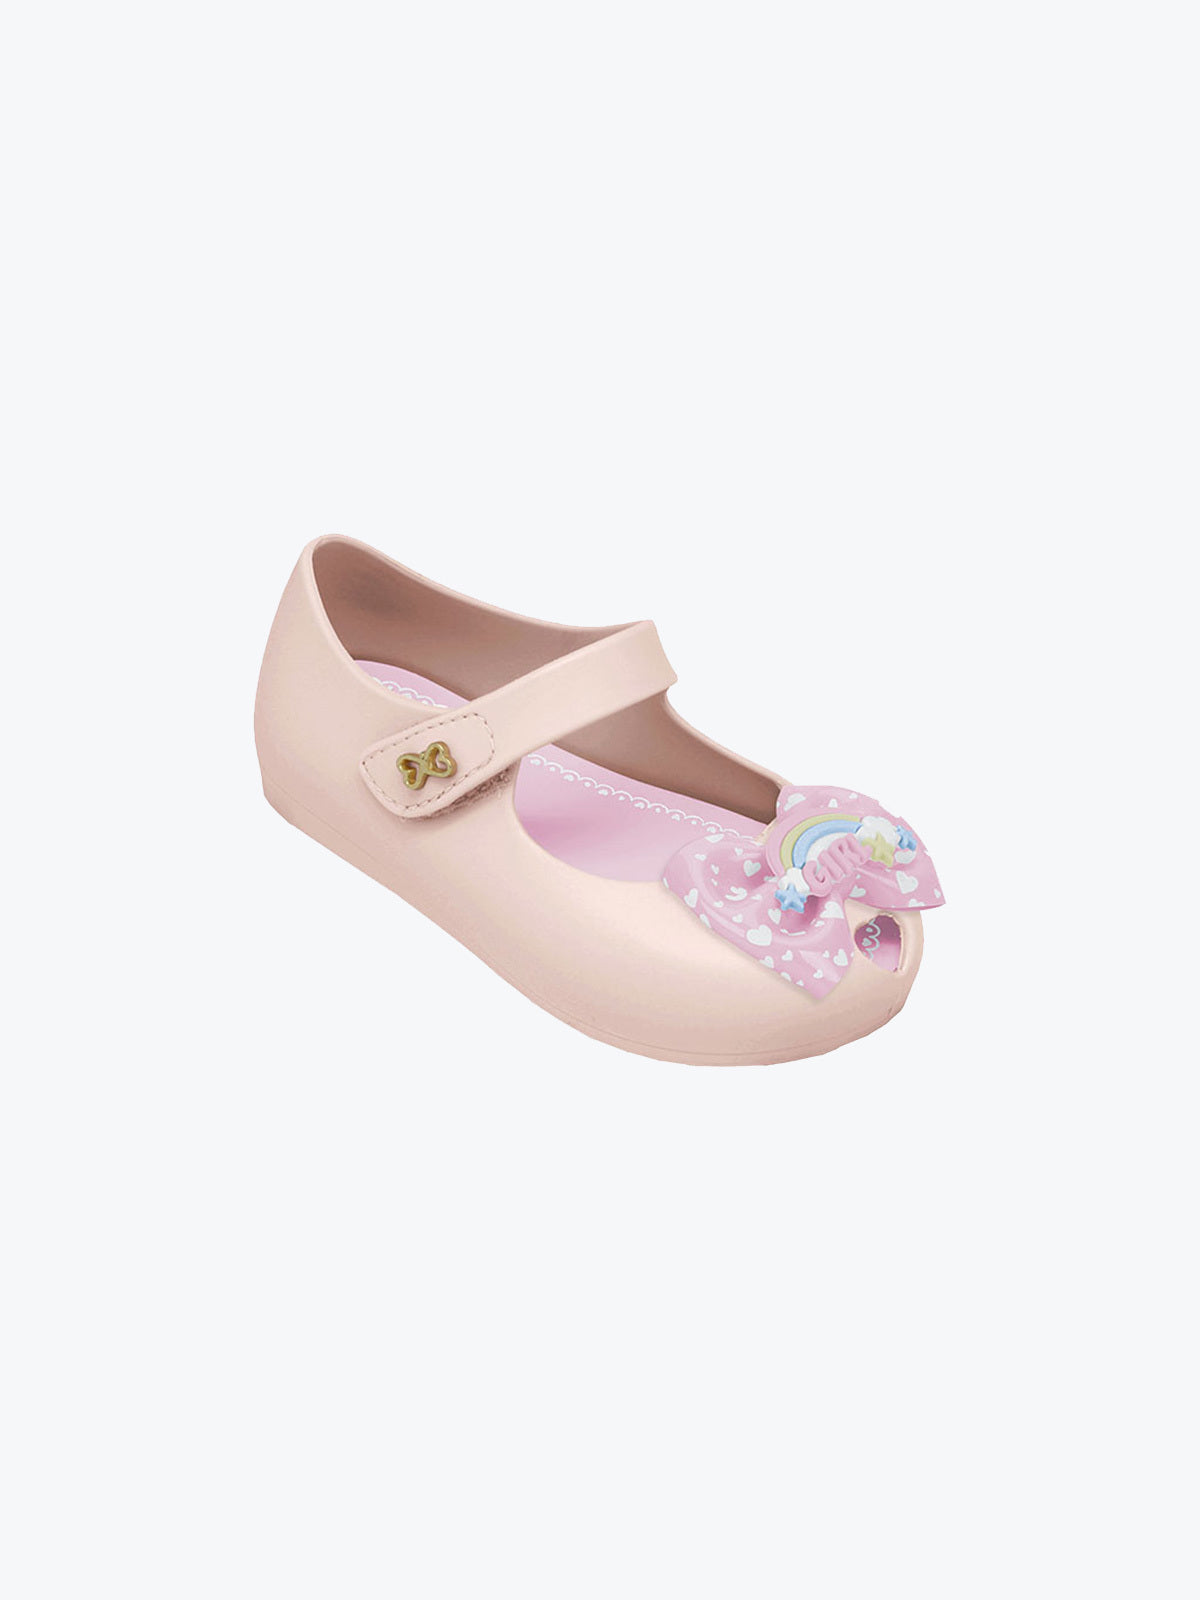 נעלי בלרינה SAPATILHA ANGEL / תינוקות- World Colors|וורלד קולורס